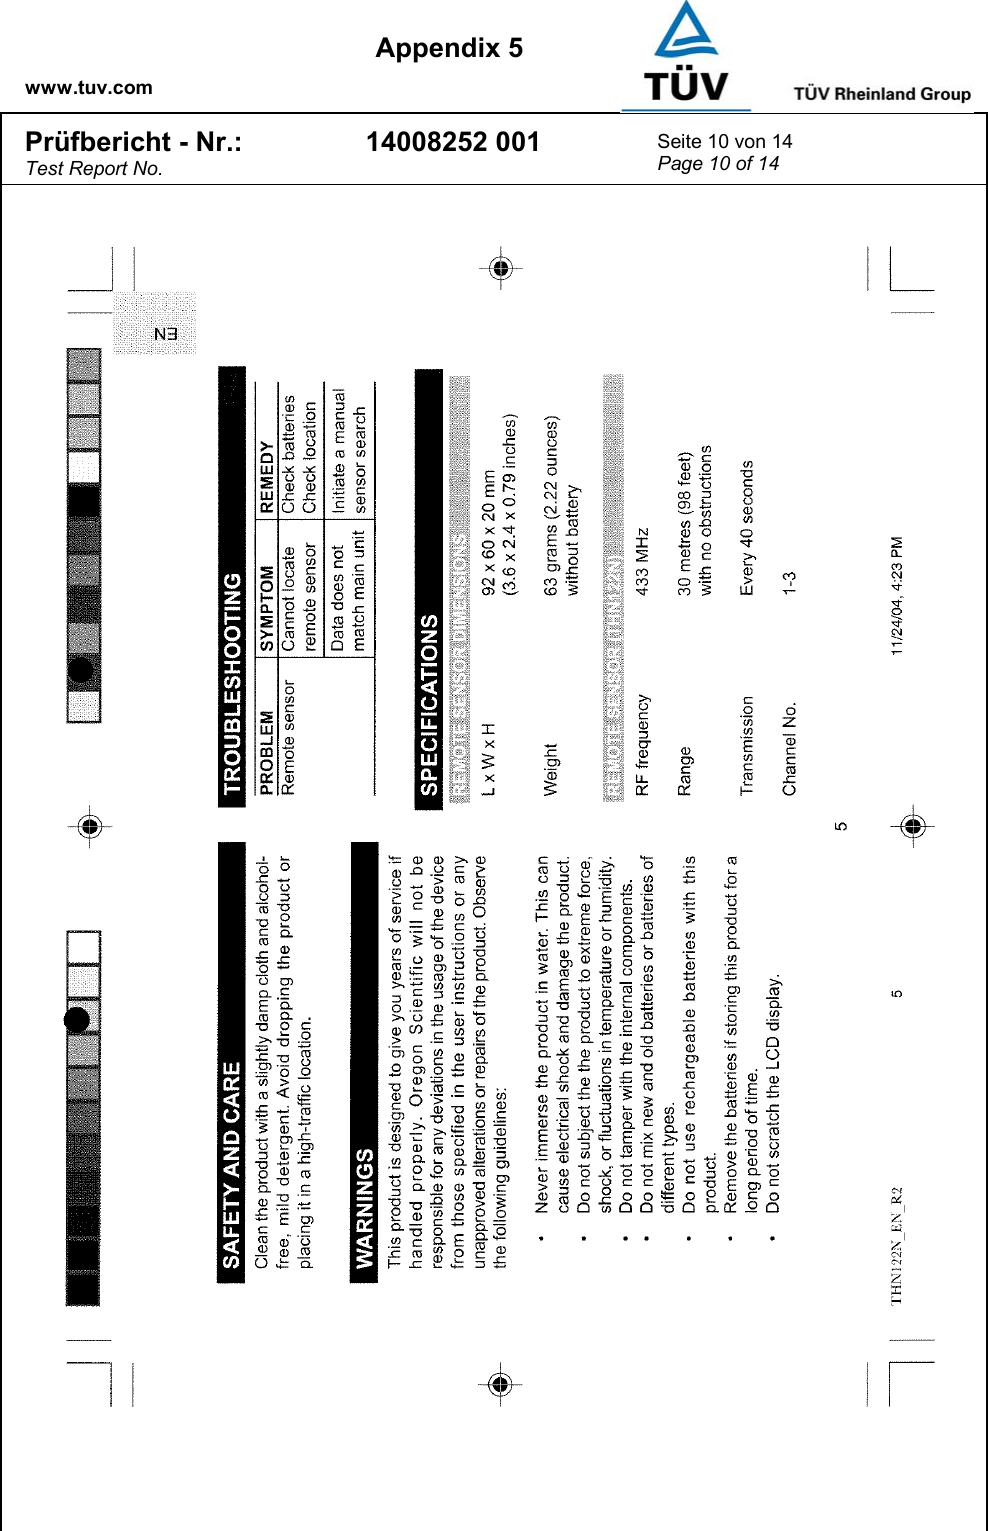    www.tuv.com  Appendix 5 Prüfbericht - Nr.: Test Report No. 14008252 001  Seite 10 von 14 Page 10 of 14   